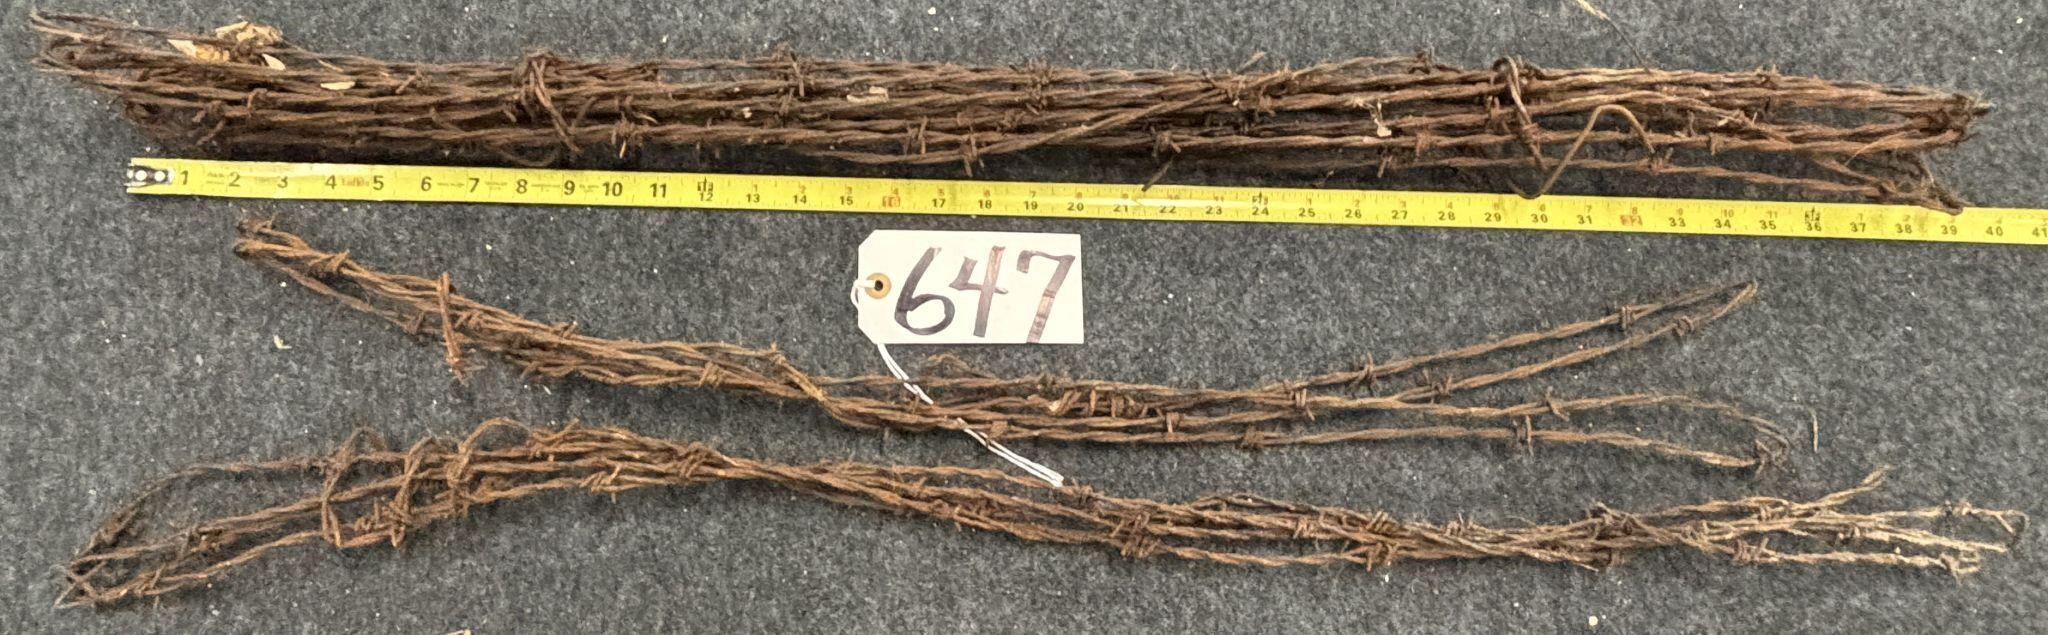 3 Bundles of Vintage Barbed Wire